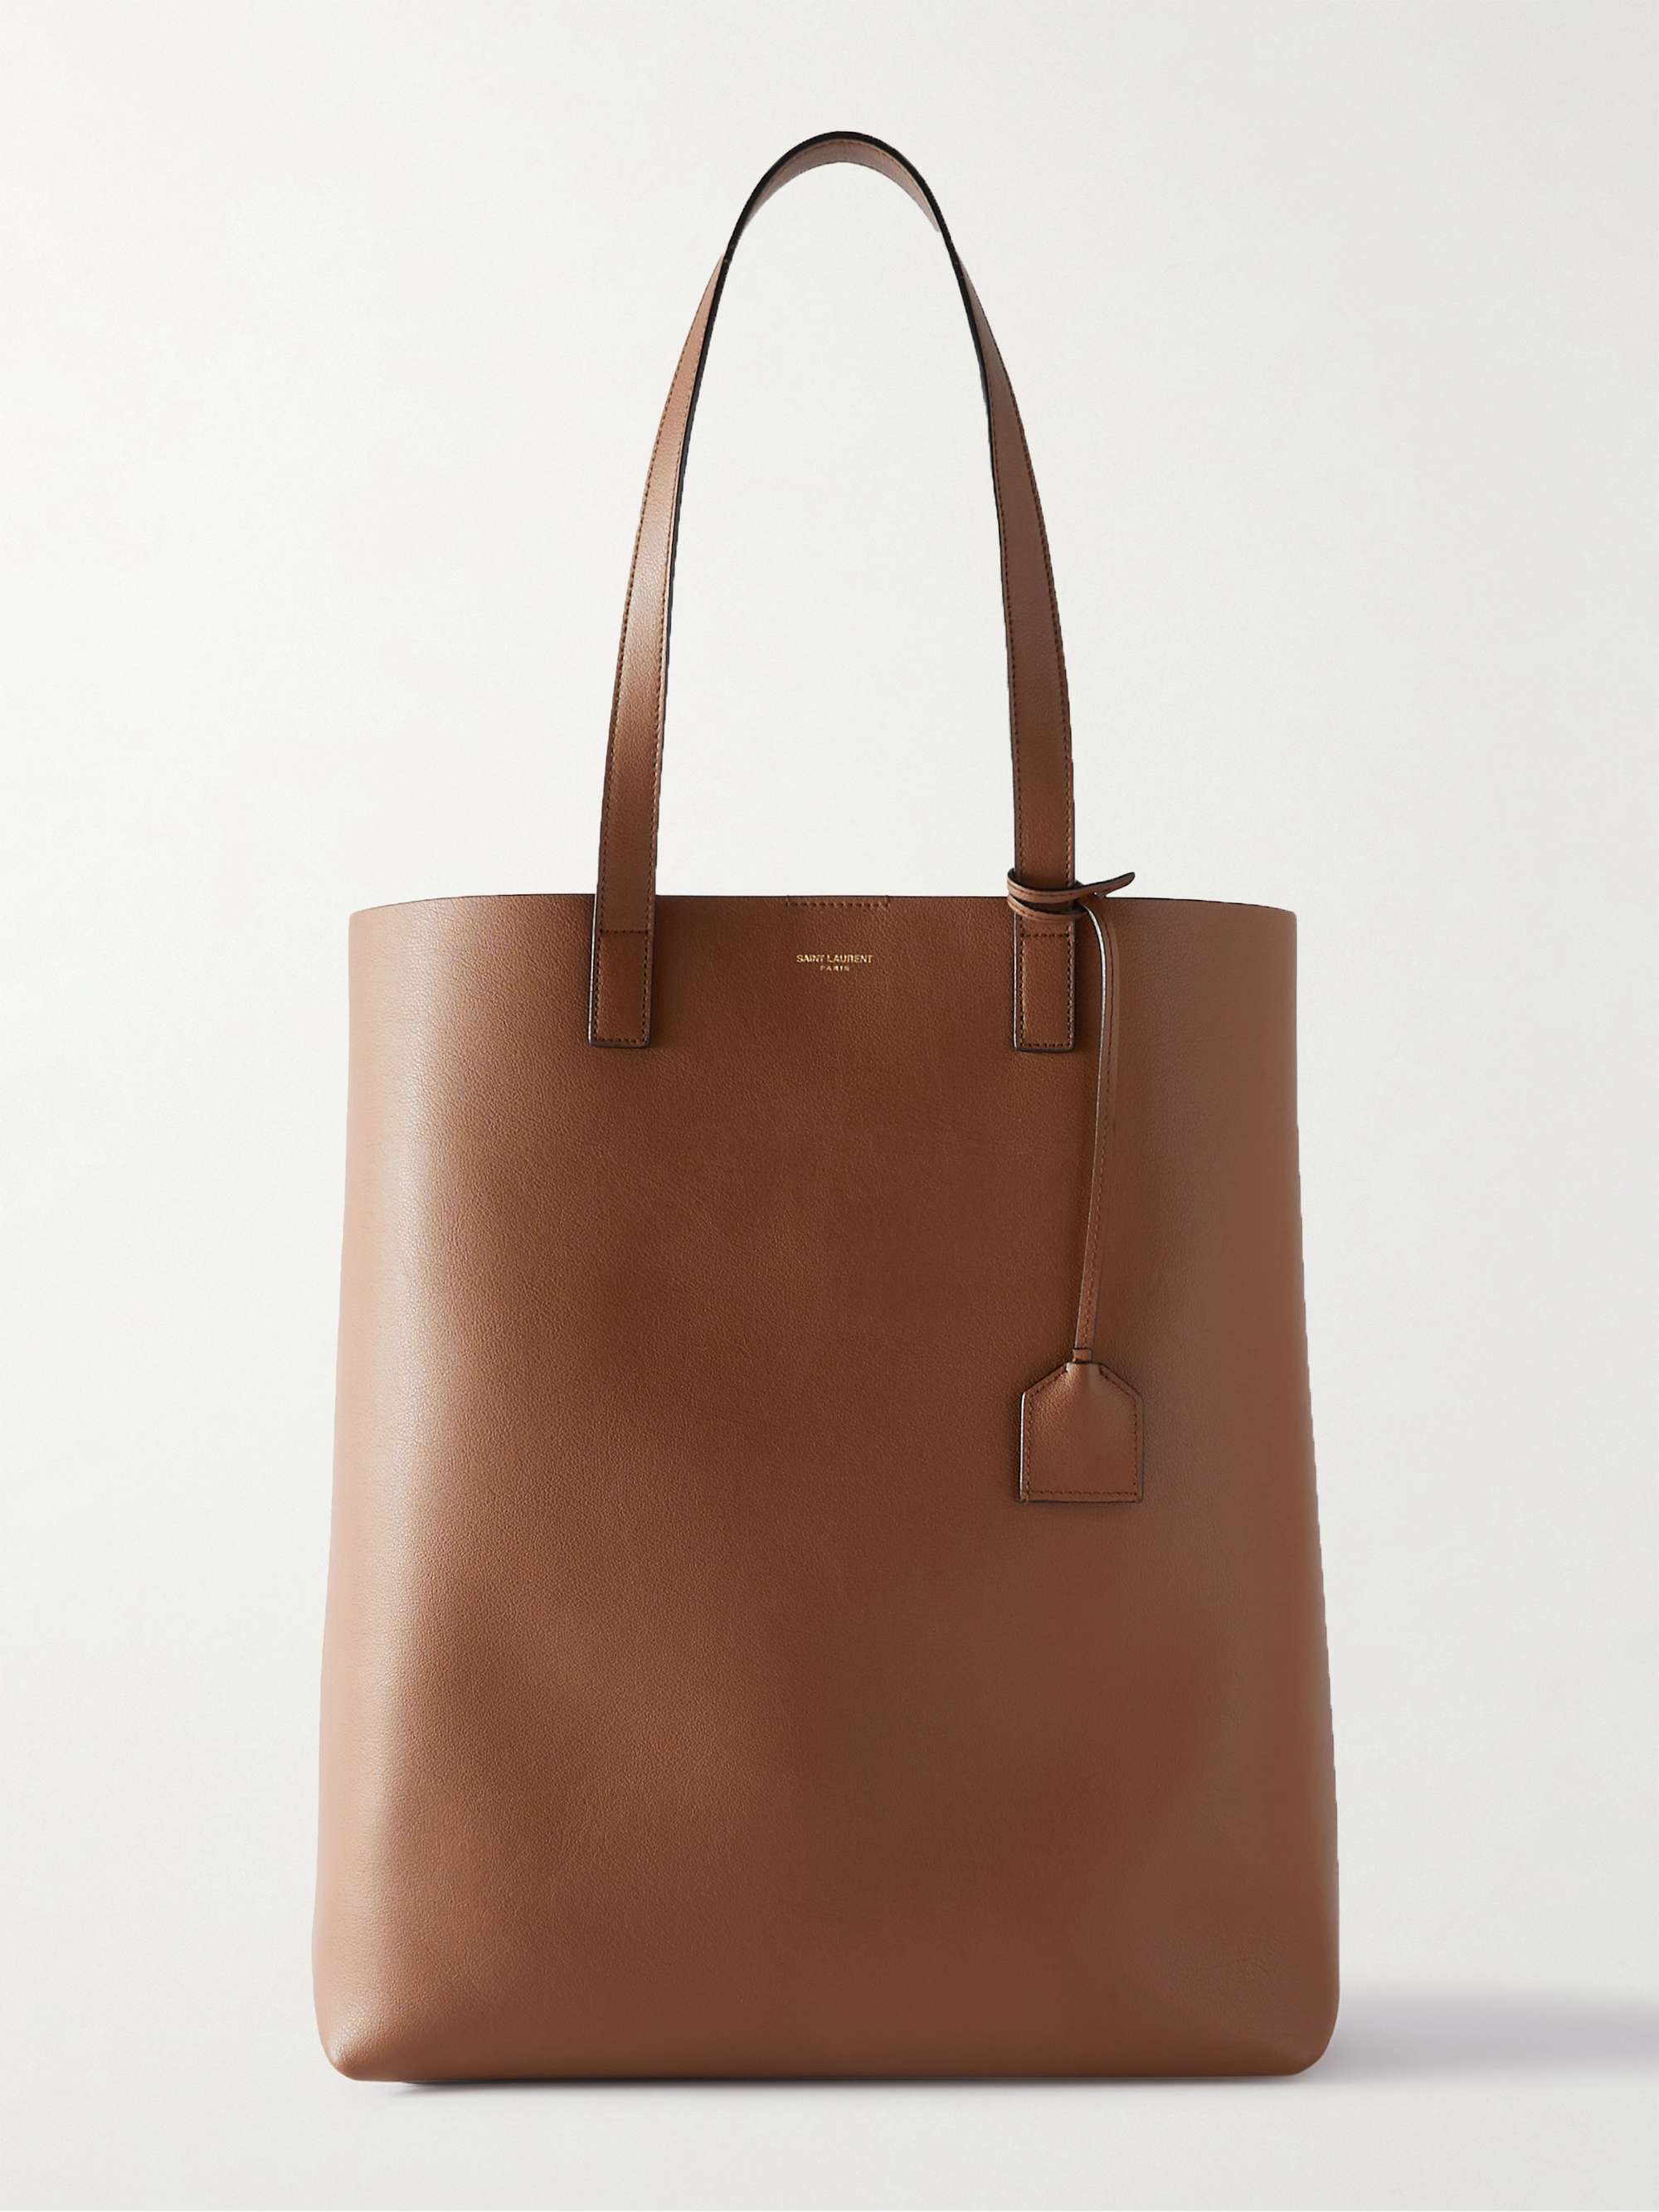 SAINT LAURENT Leather Tote Bag for Men | MR PORTER